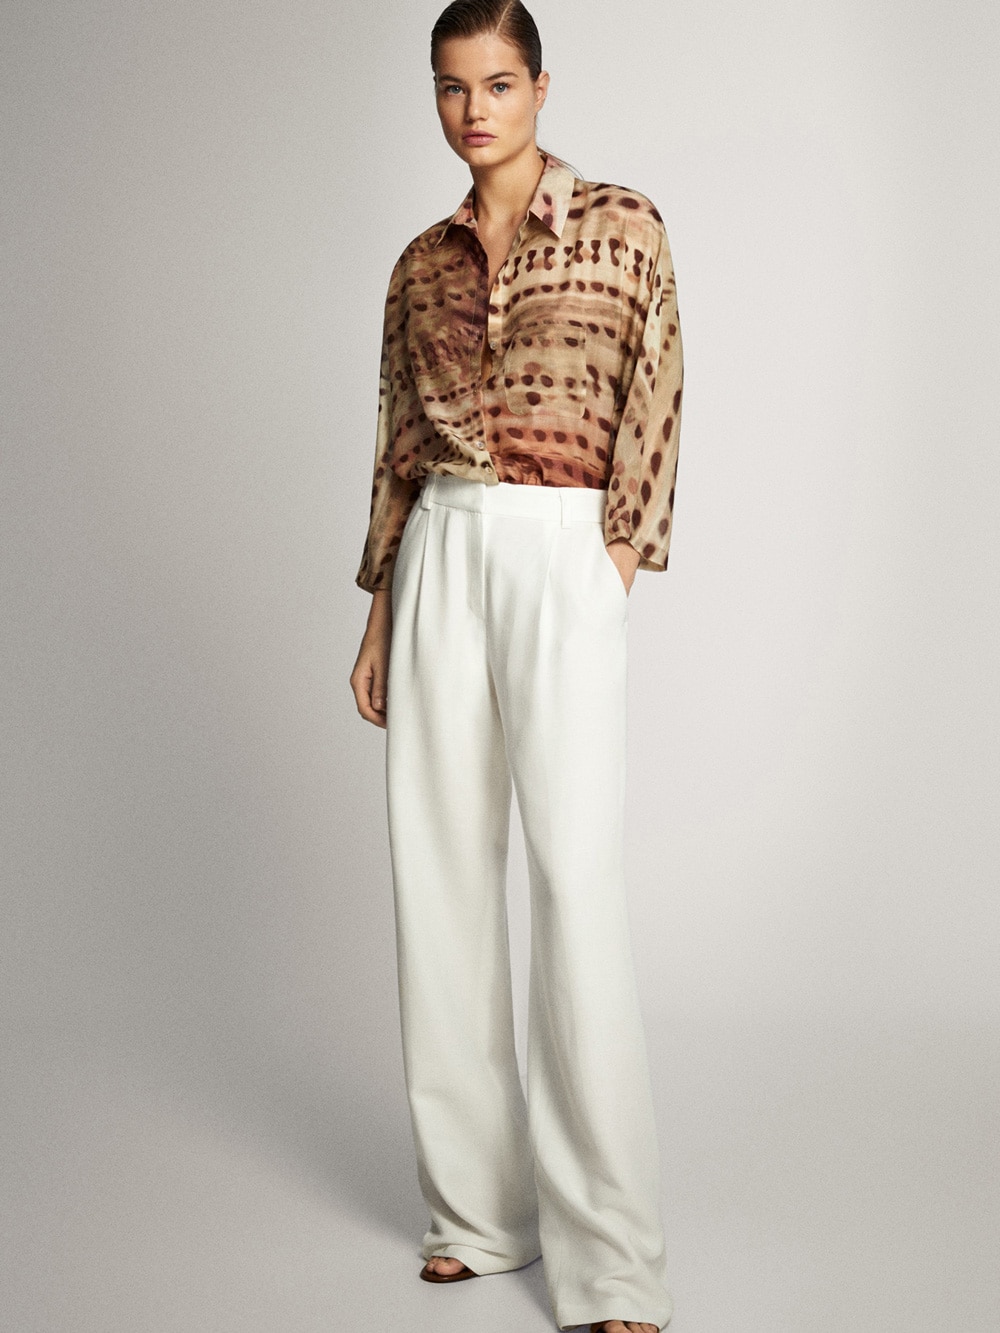 Fotos: Las blusas y más elegantes y favorecedoras en las rebajas de Massimo Dutti a mitad de precio Mujer